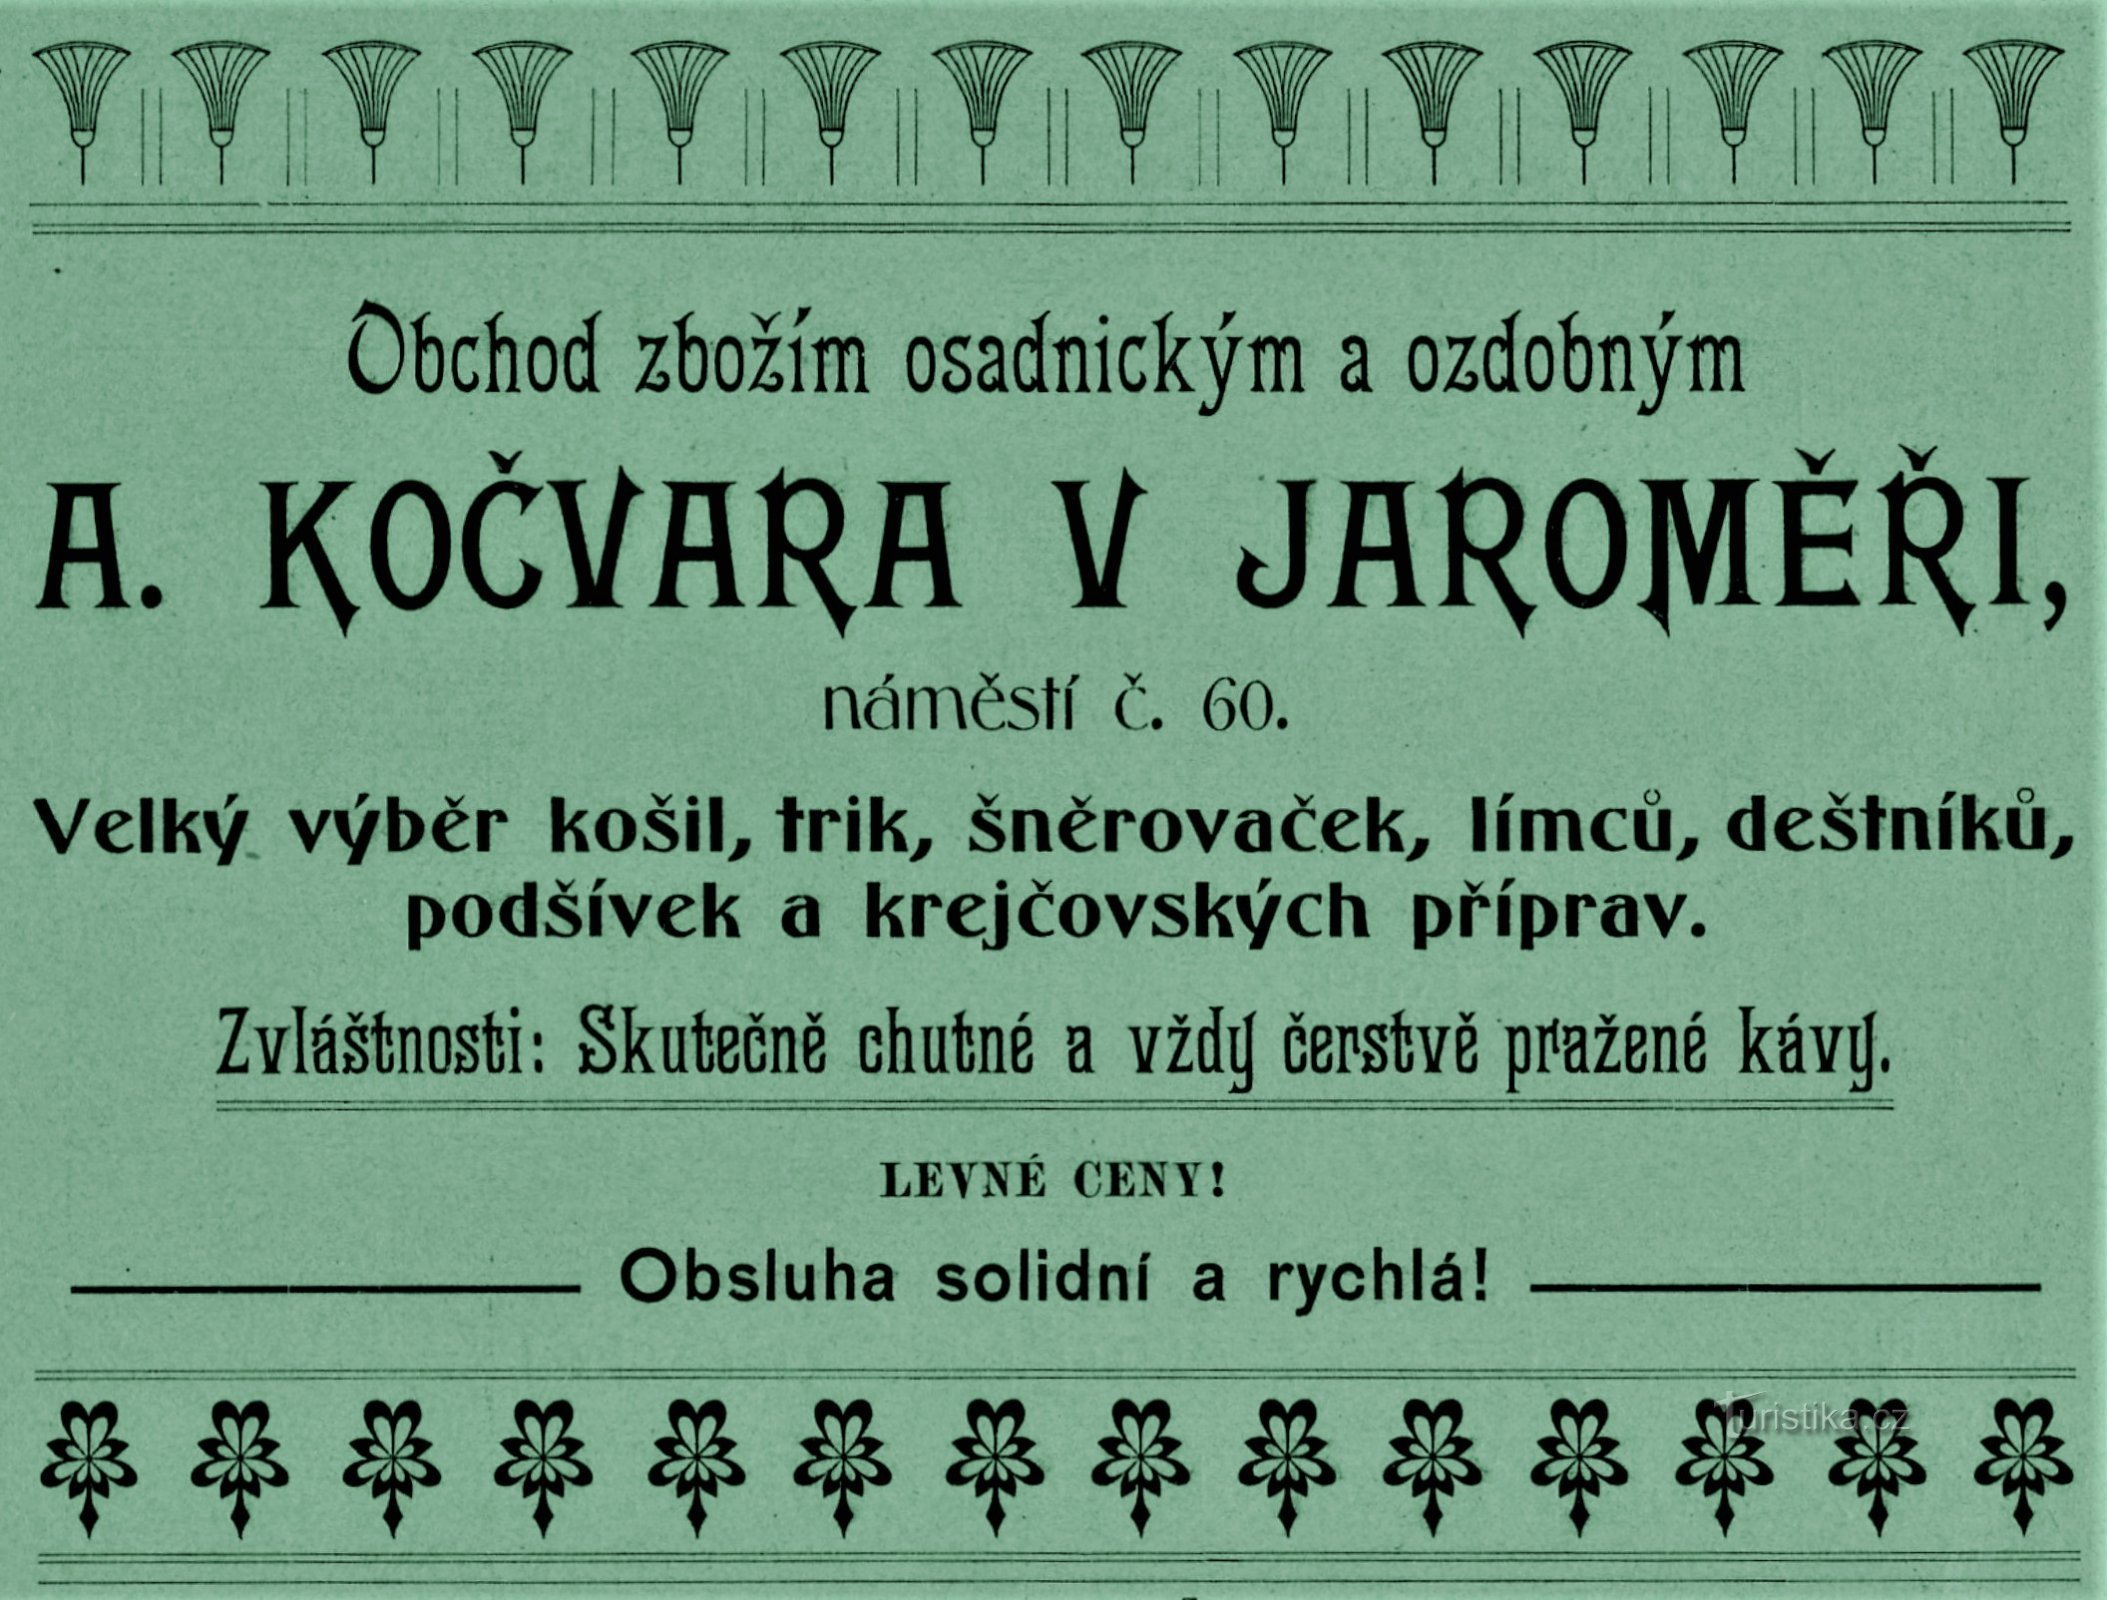 Sodobni oglas podjetja A. Kočvara v Jaroměřu iz leta 1903